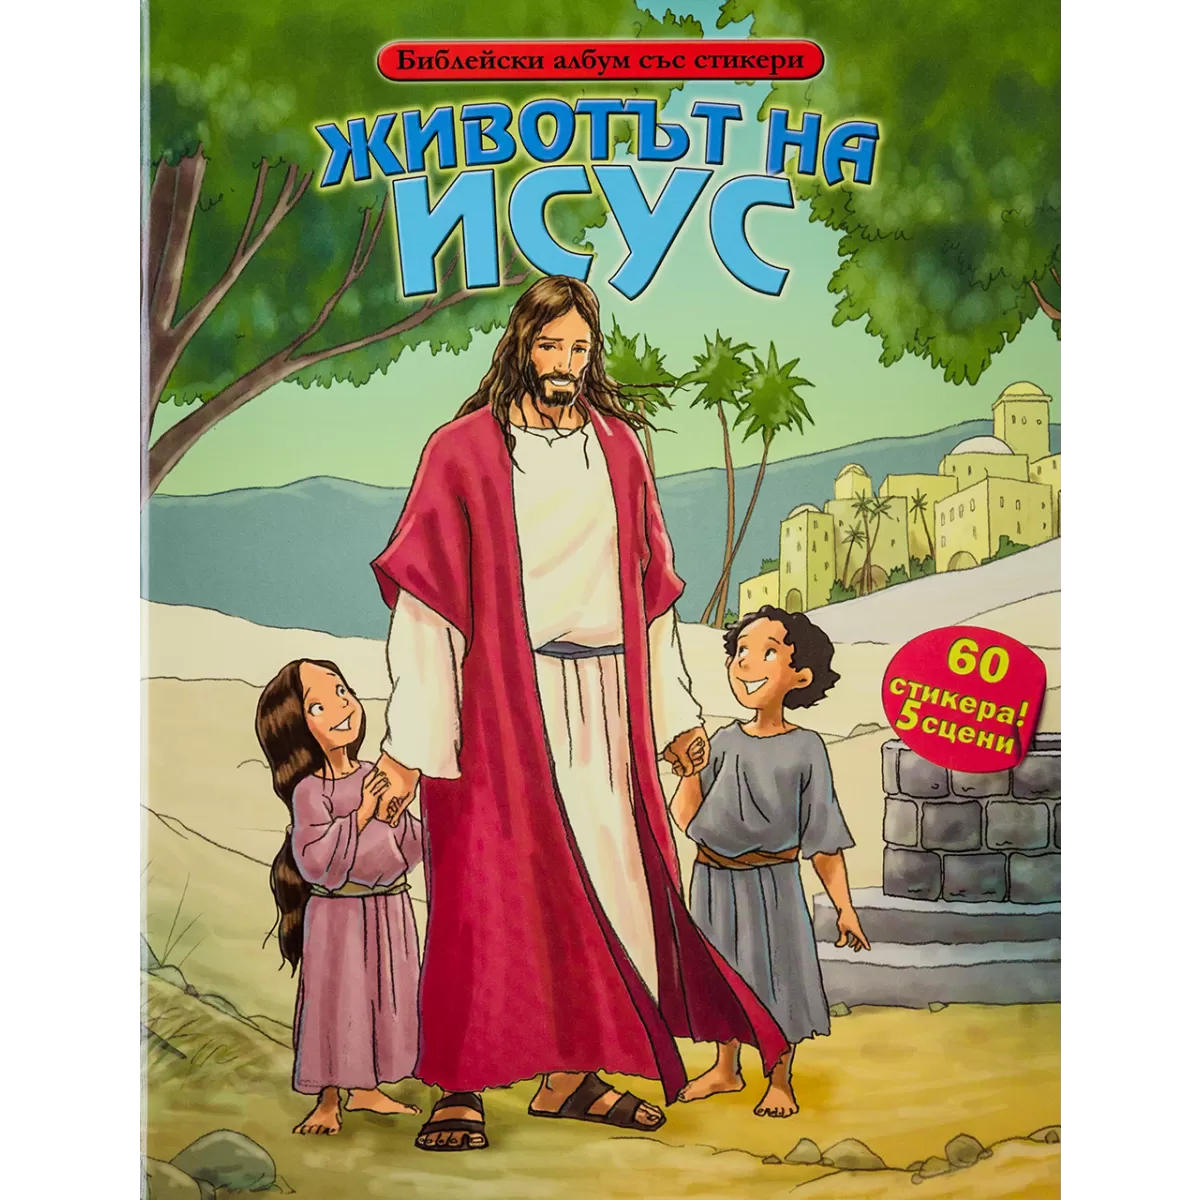 Животът на Исус – Библейски албум със стикери